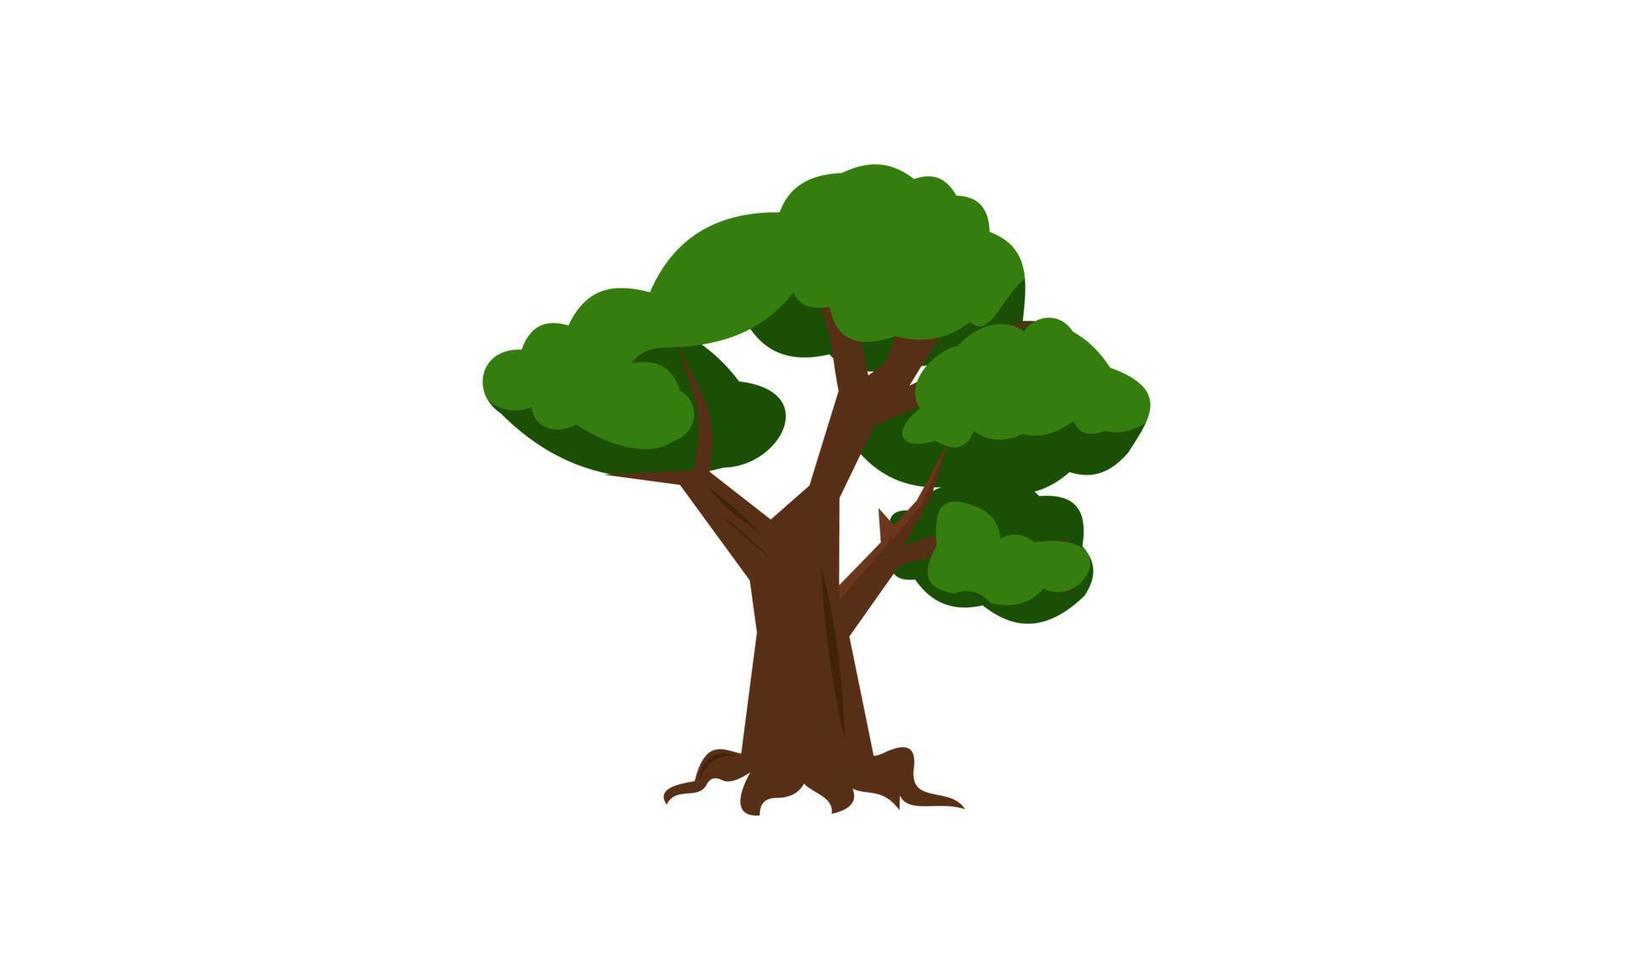 árbol verde caducifolio con raíces expuestas ilustración vectorial aislada vector